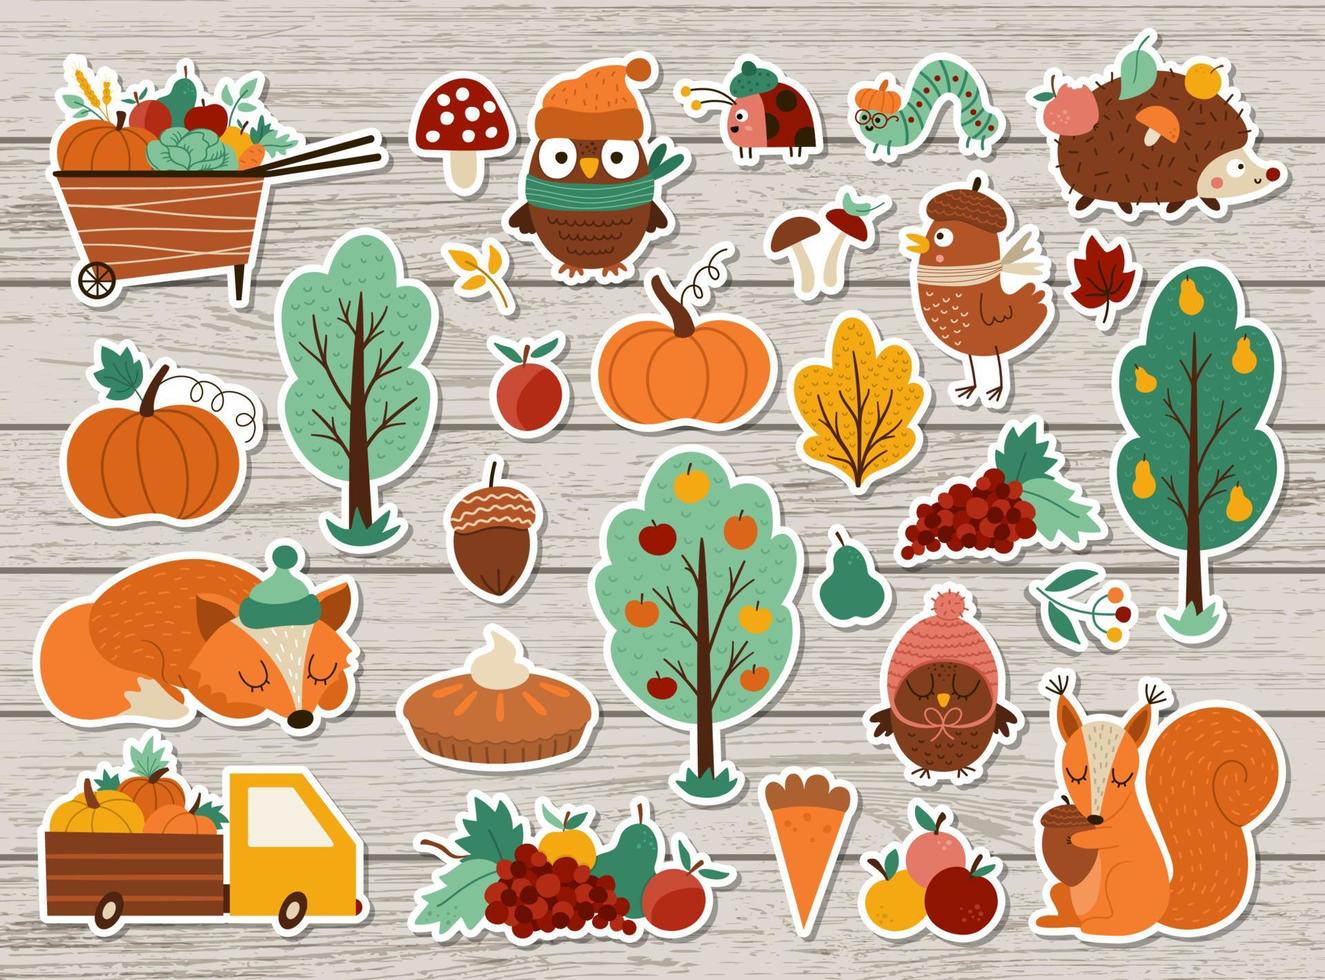 Vektor-Herbst-Aufkleber-Set. Herbst-Patches-Kollektion mit süßen Waldtieren, Bäumen, Vögeln auf Holzhintergrund. Herbstferien-Patches packen mit Gartenelementen, Ernte, Obst, Gemüse vektor